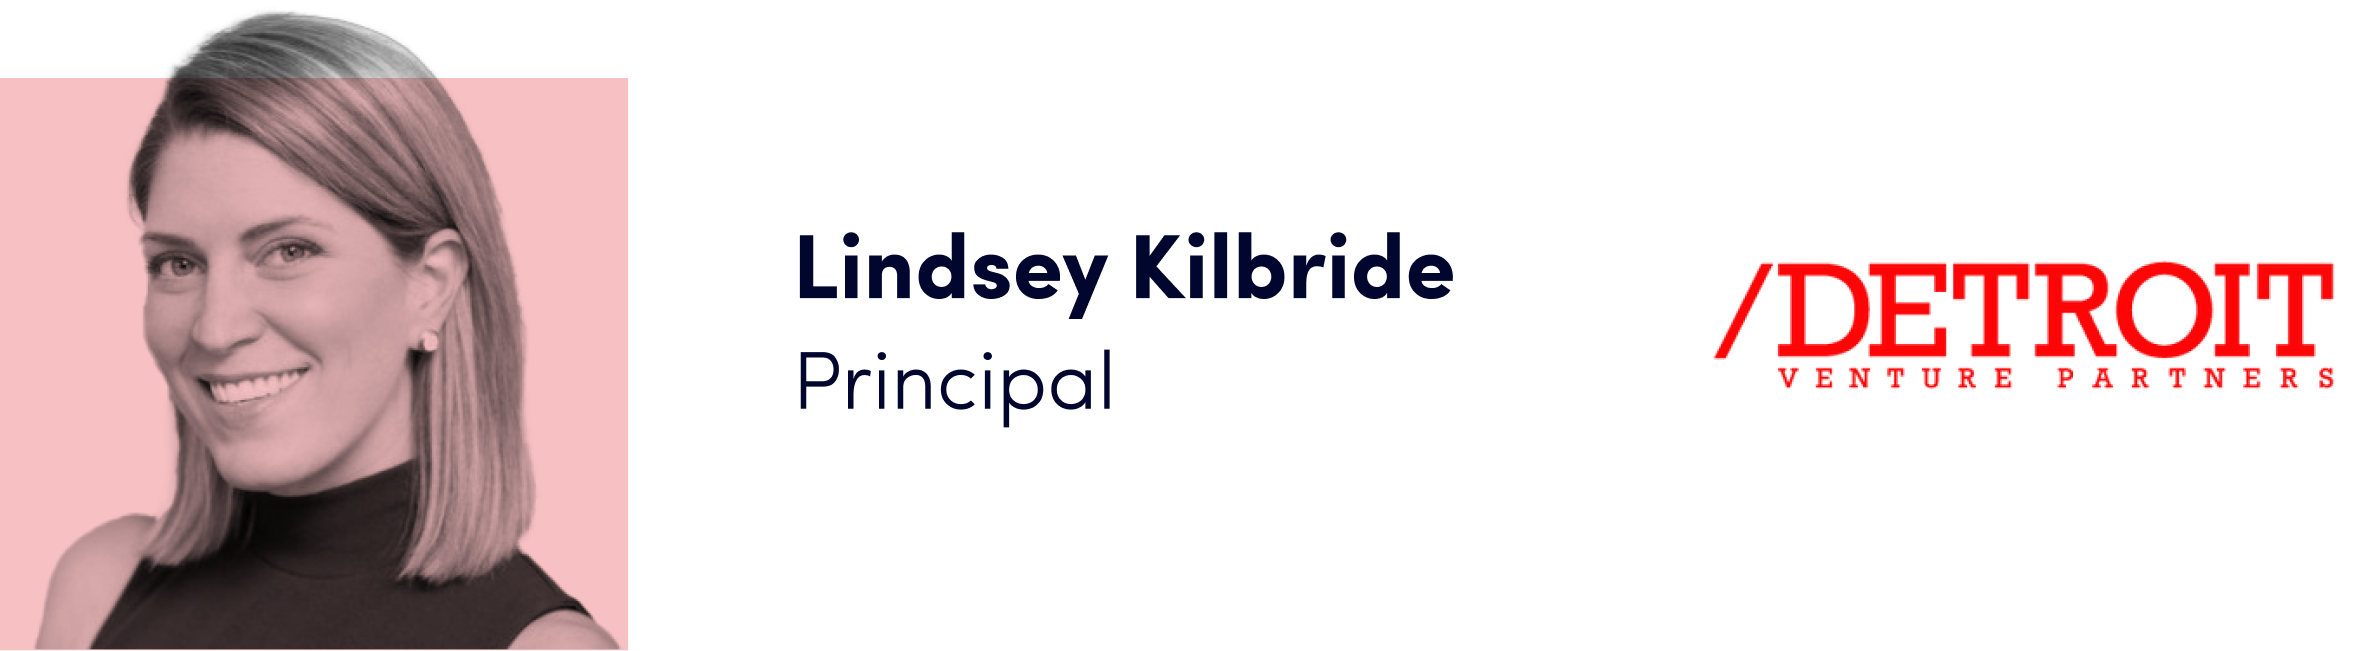 Lindsey Kilbride Expert Blog Image